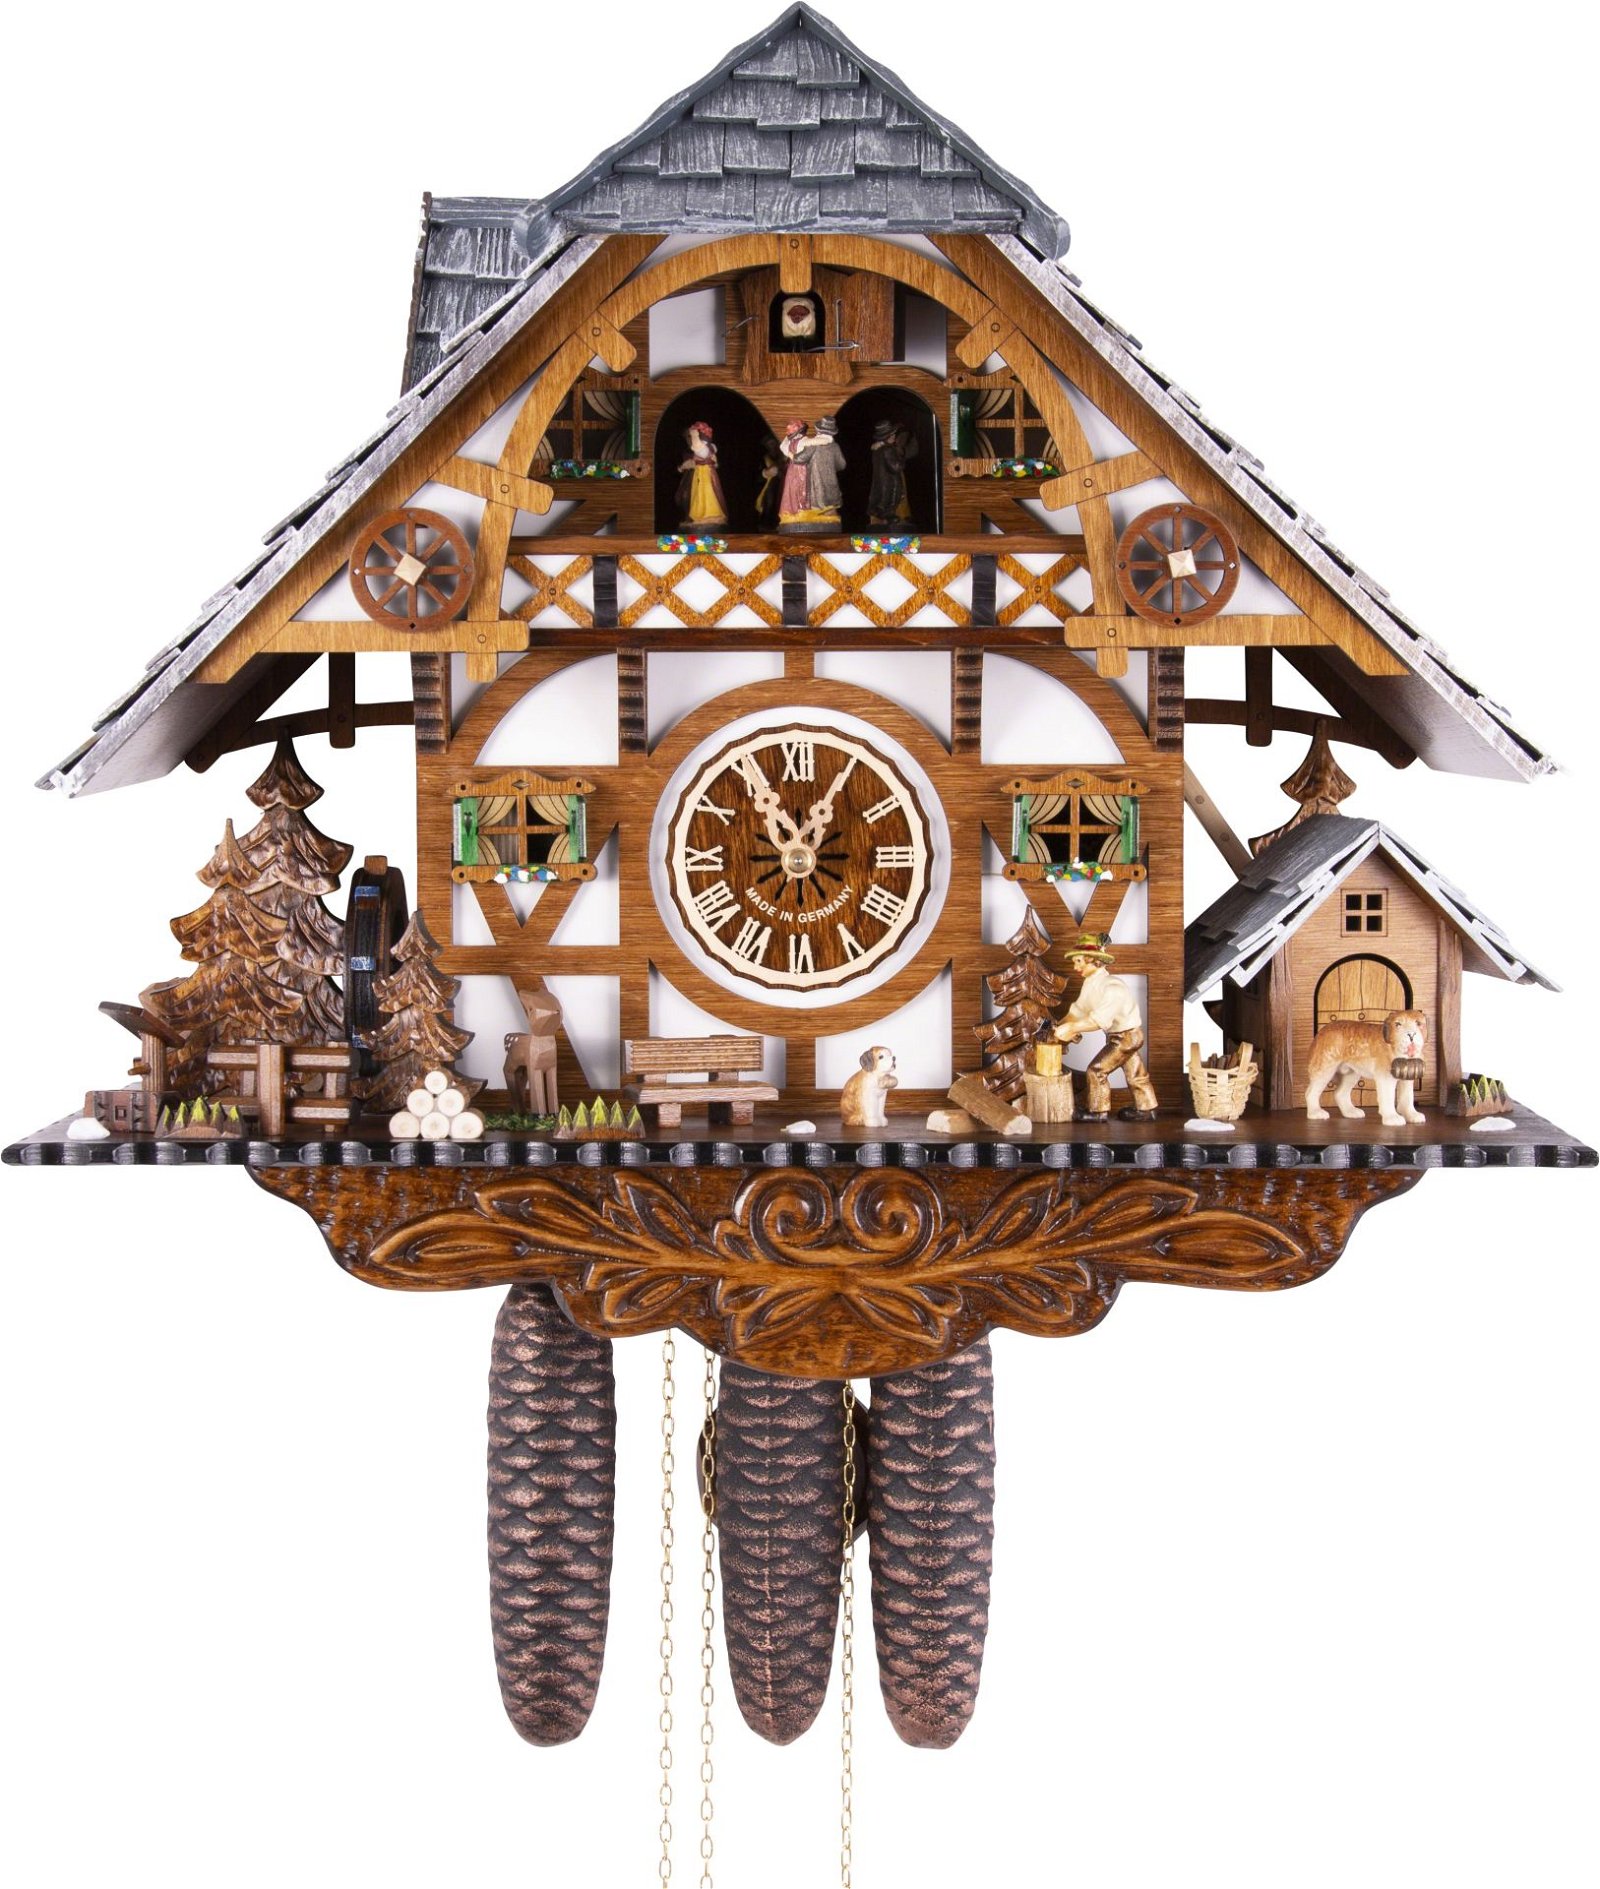 Kuckucksuhr Chalet-Stil 8-Tage-Uhrwerk 43cm von Engstler